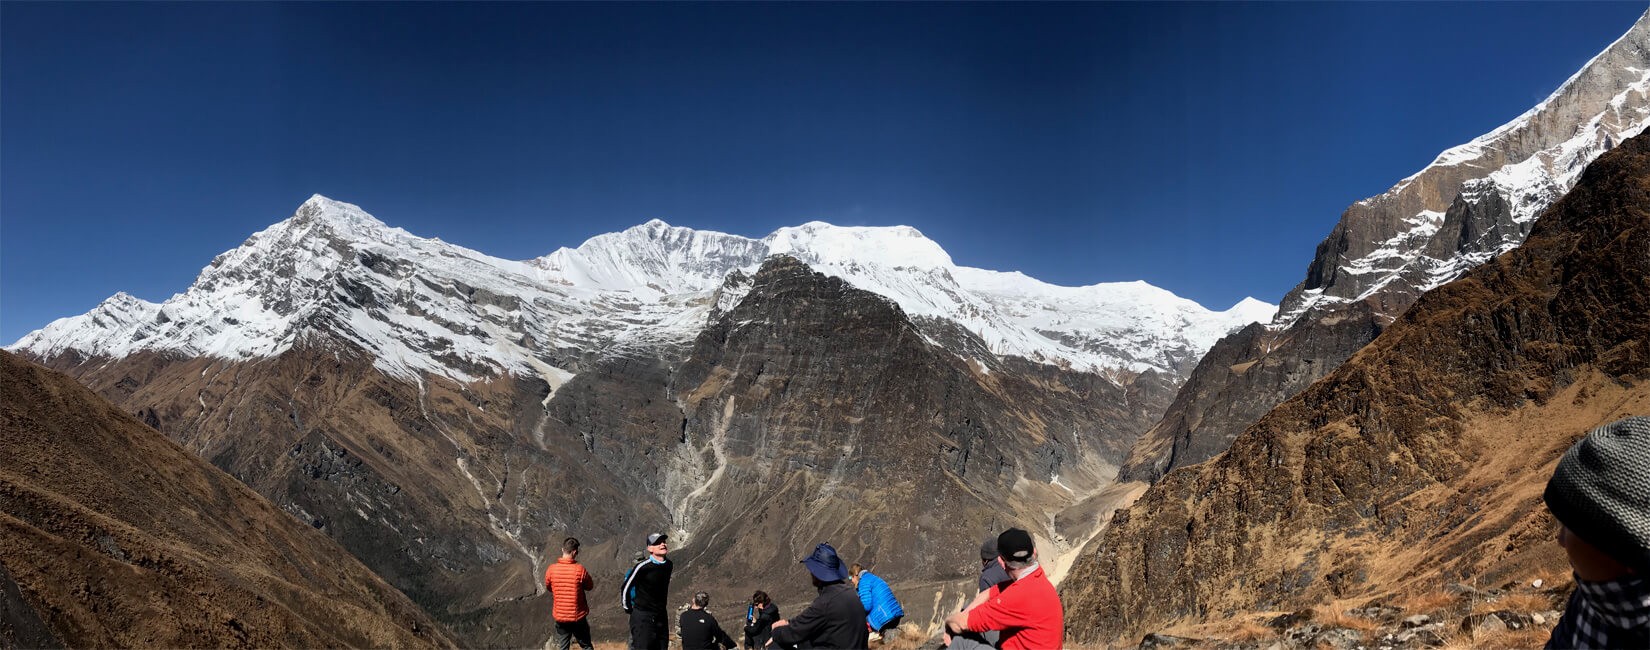 Dhaulagiri Circuit Trek with Dhampus Peak Climbing